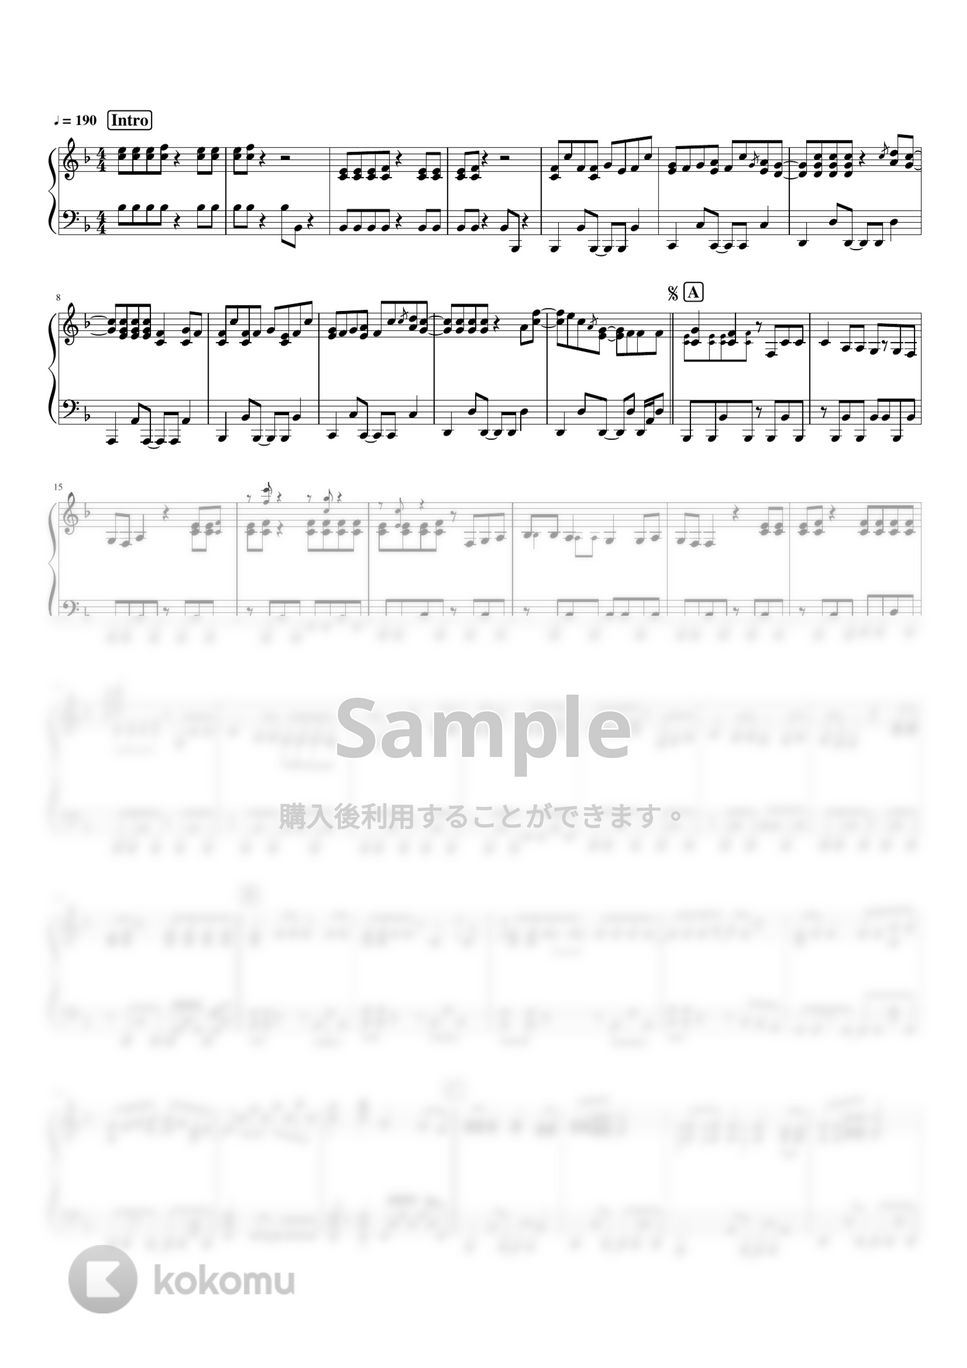 ヨルシカ - レプリカント by pianomikan